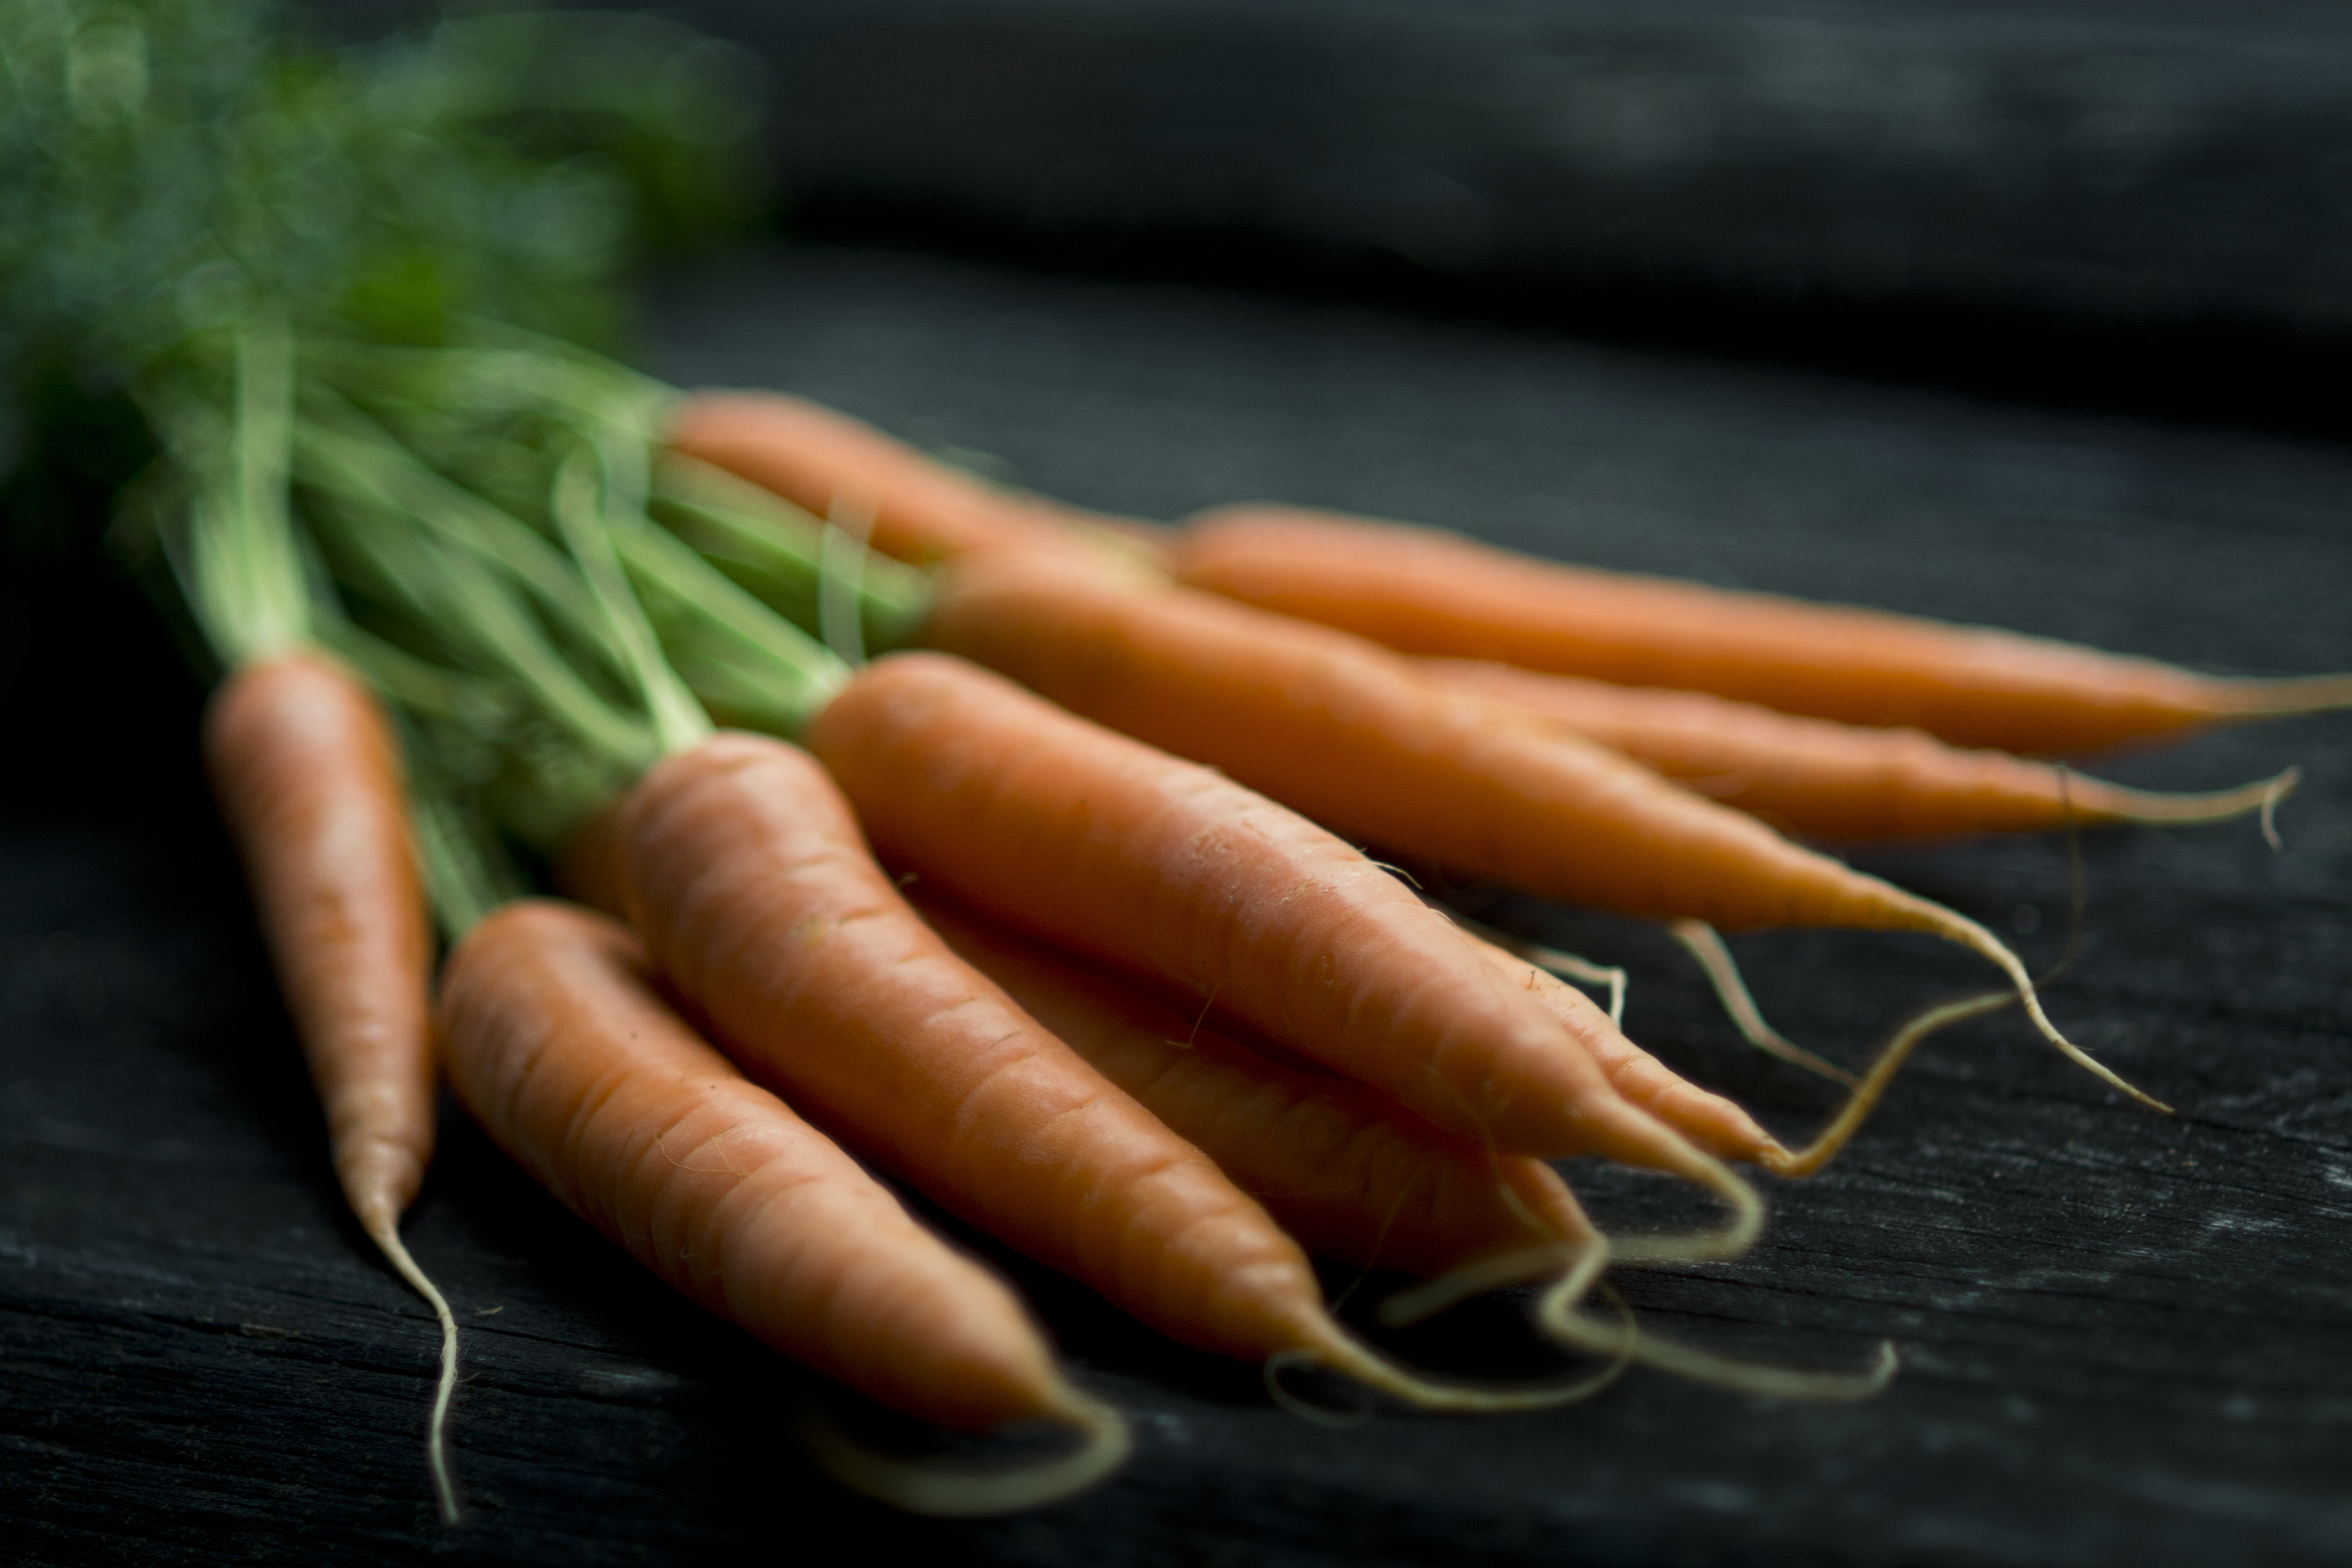 Gruppo di carote con radice